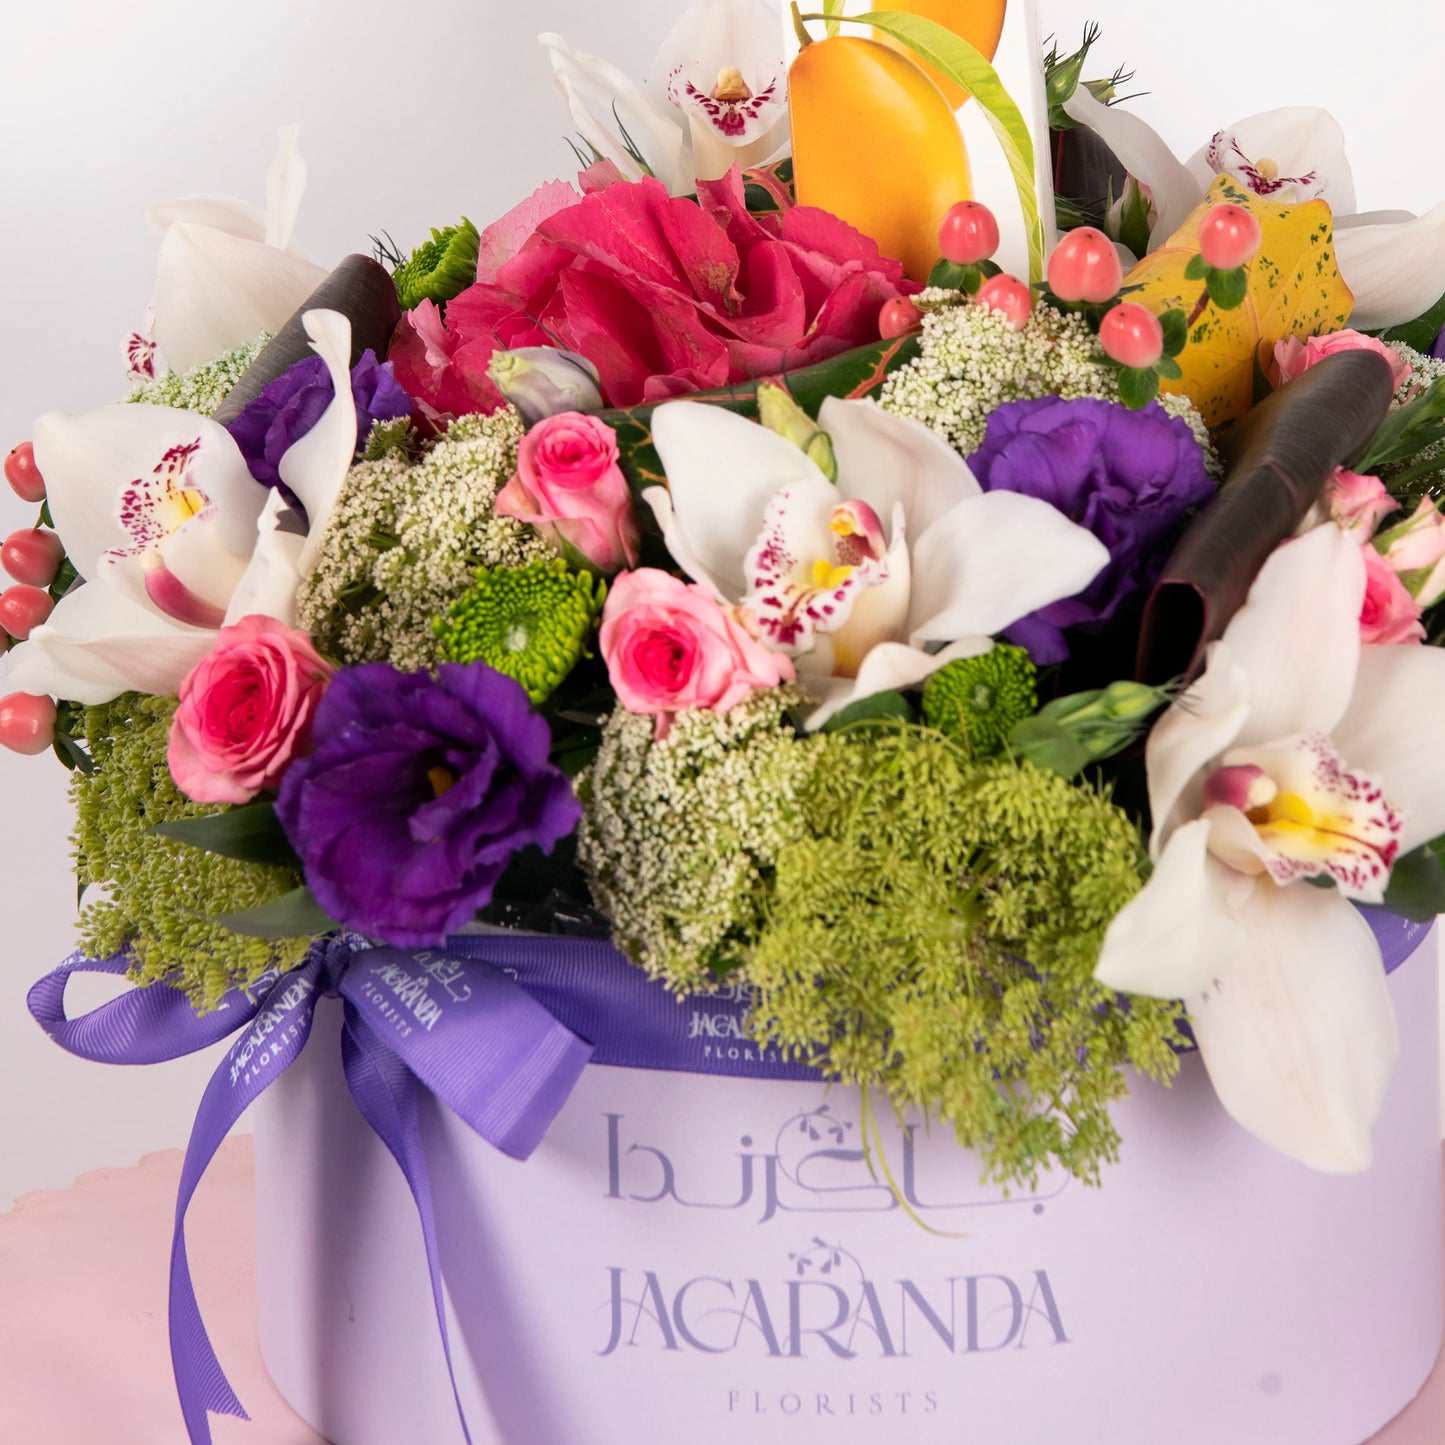 jacaranda Diffuser MANGO & flowers box